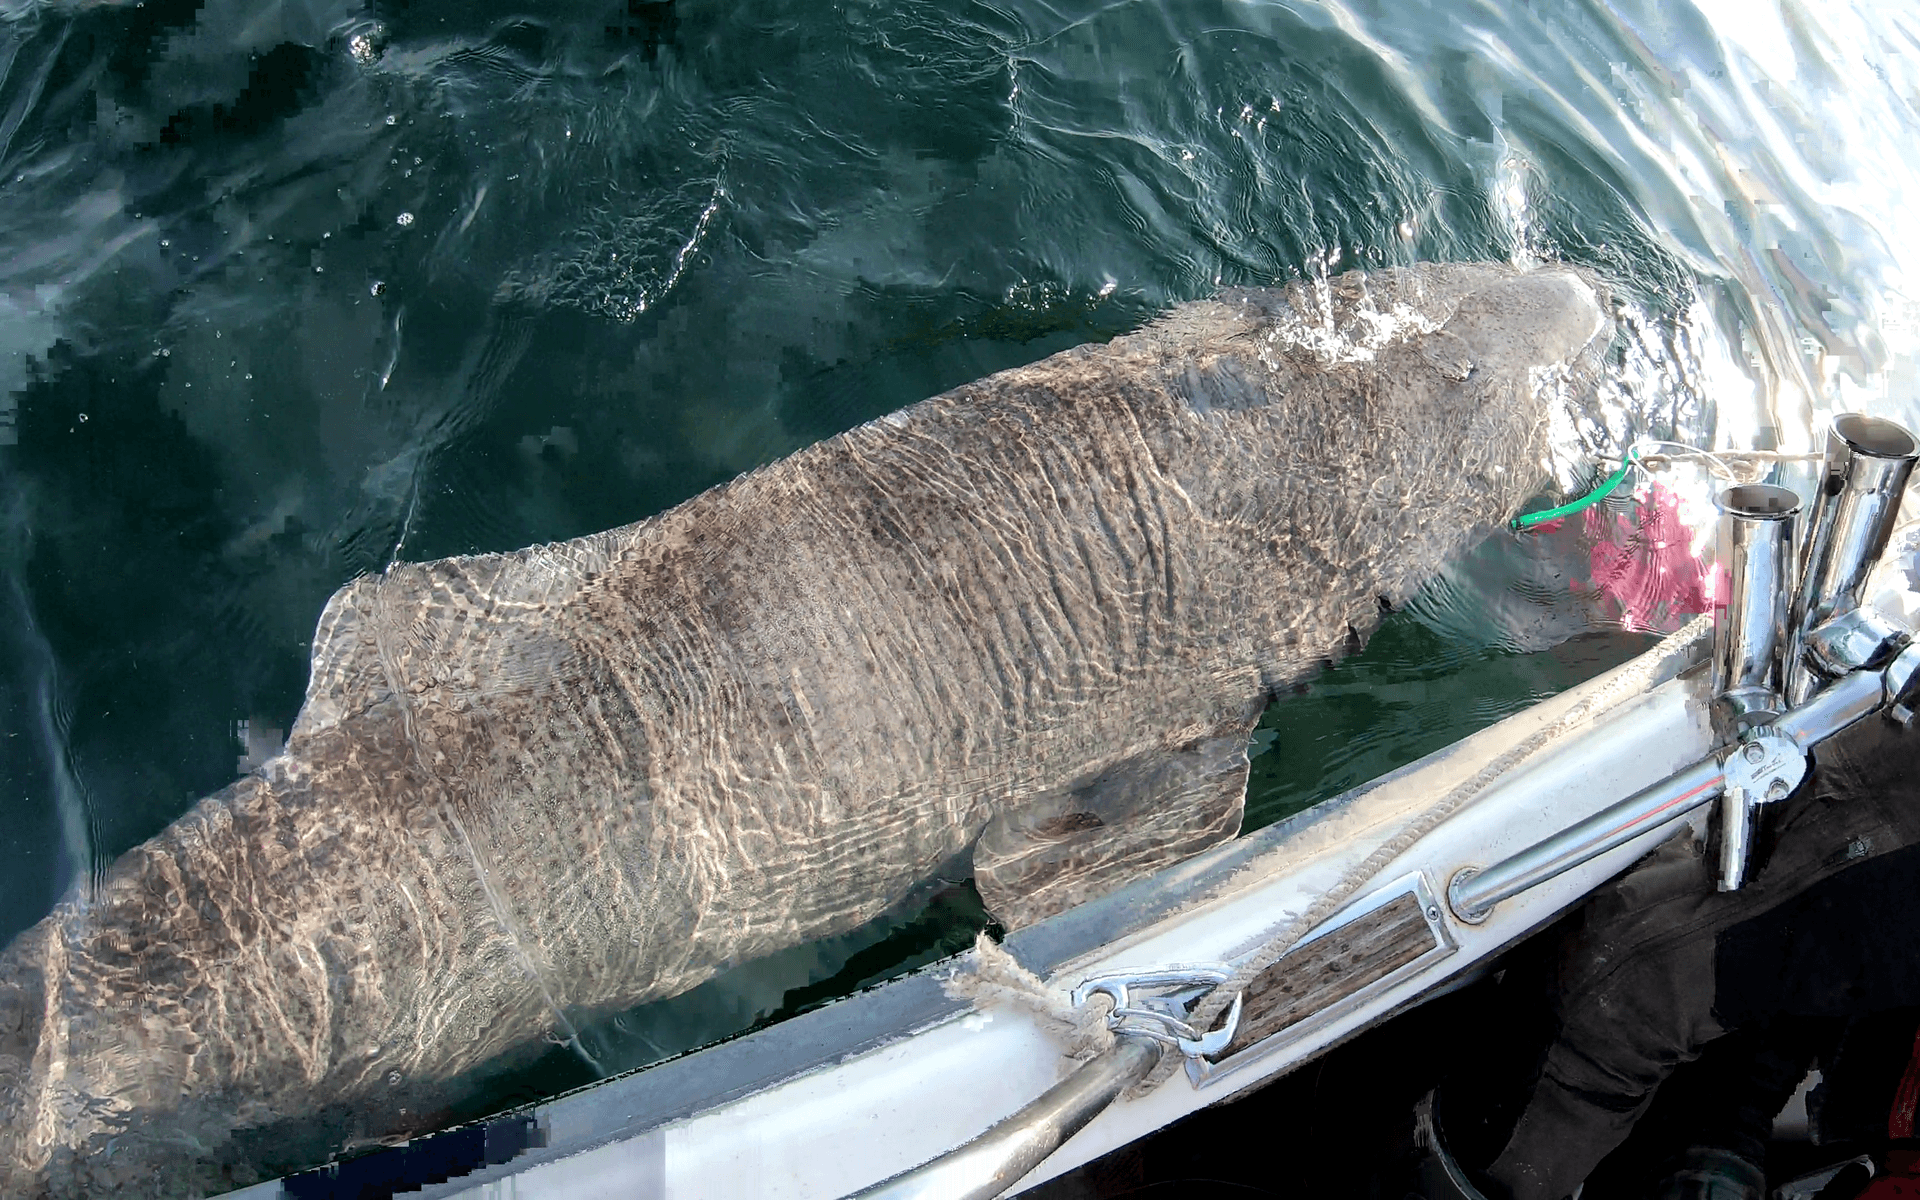 Med sina 405 centimeter och 678 kilo är den nämligen, om uppskattningarna stämmer, den största fisken som någonsin fångats i Sverige med spö.